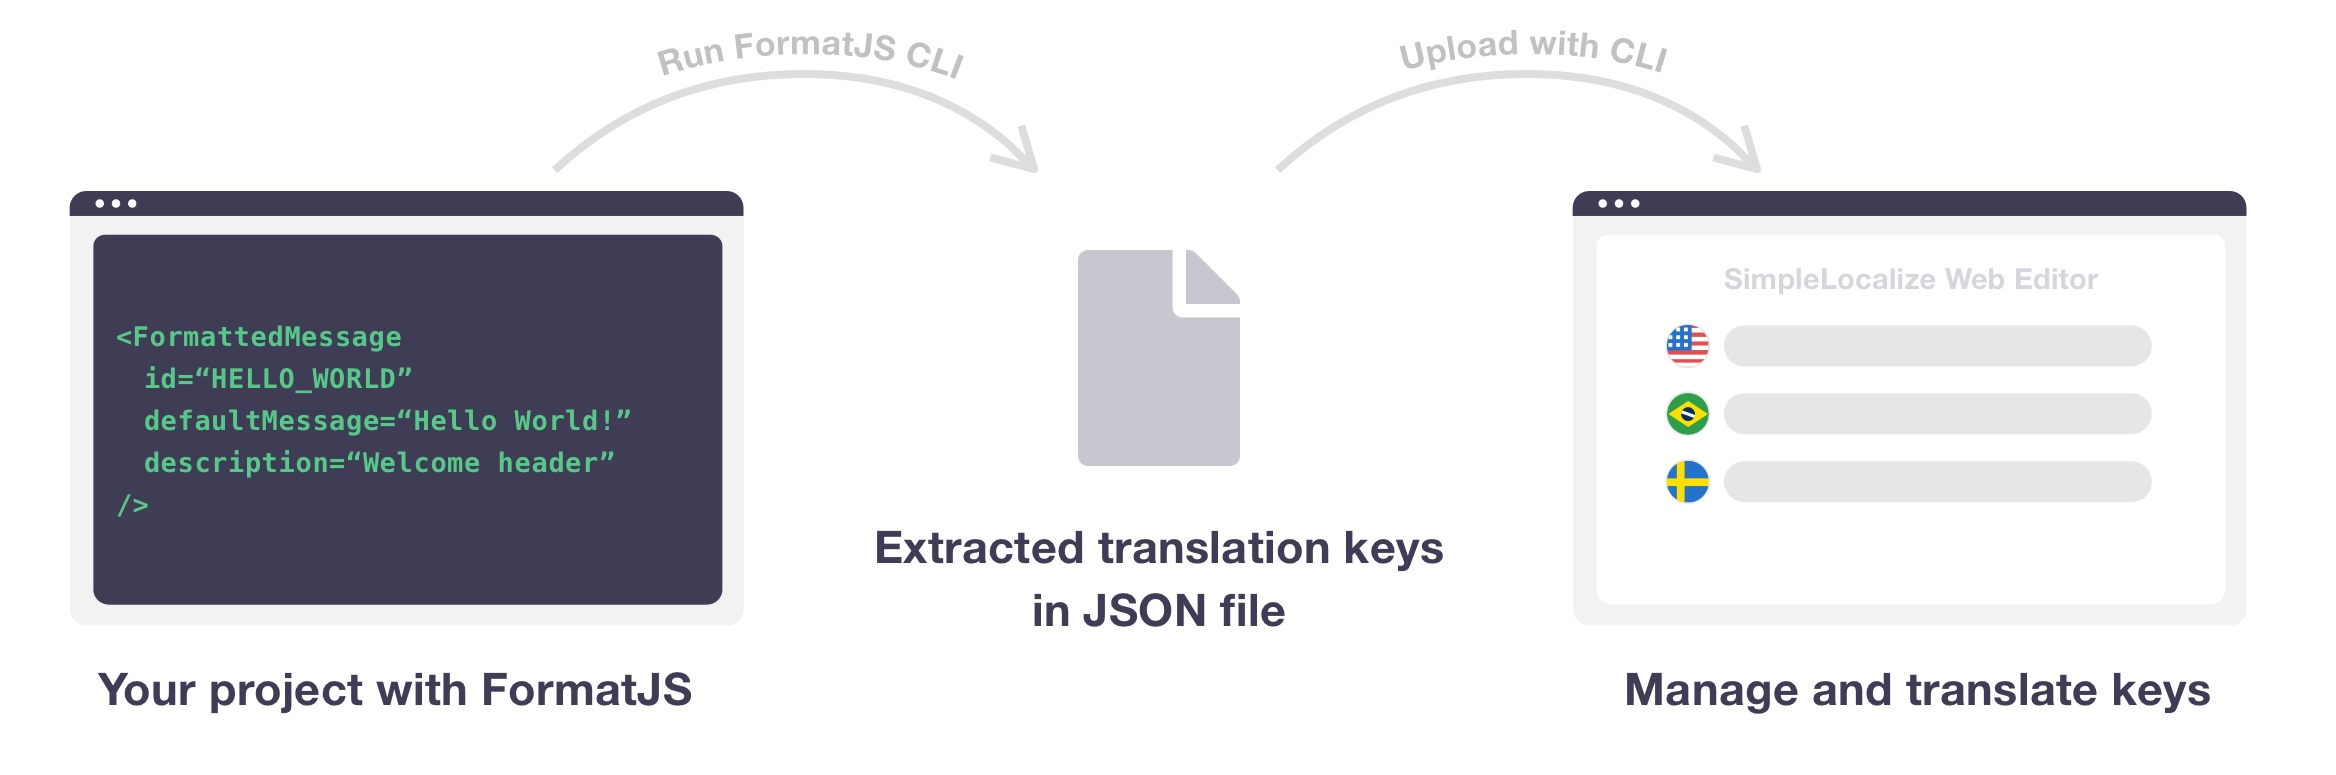 Uploading extracted translation keys to translation editor